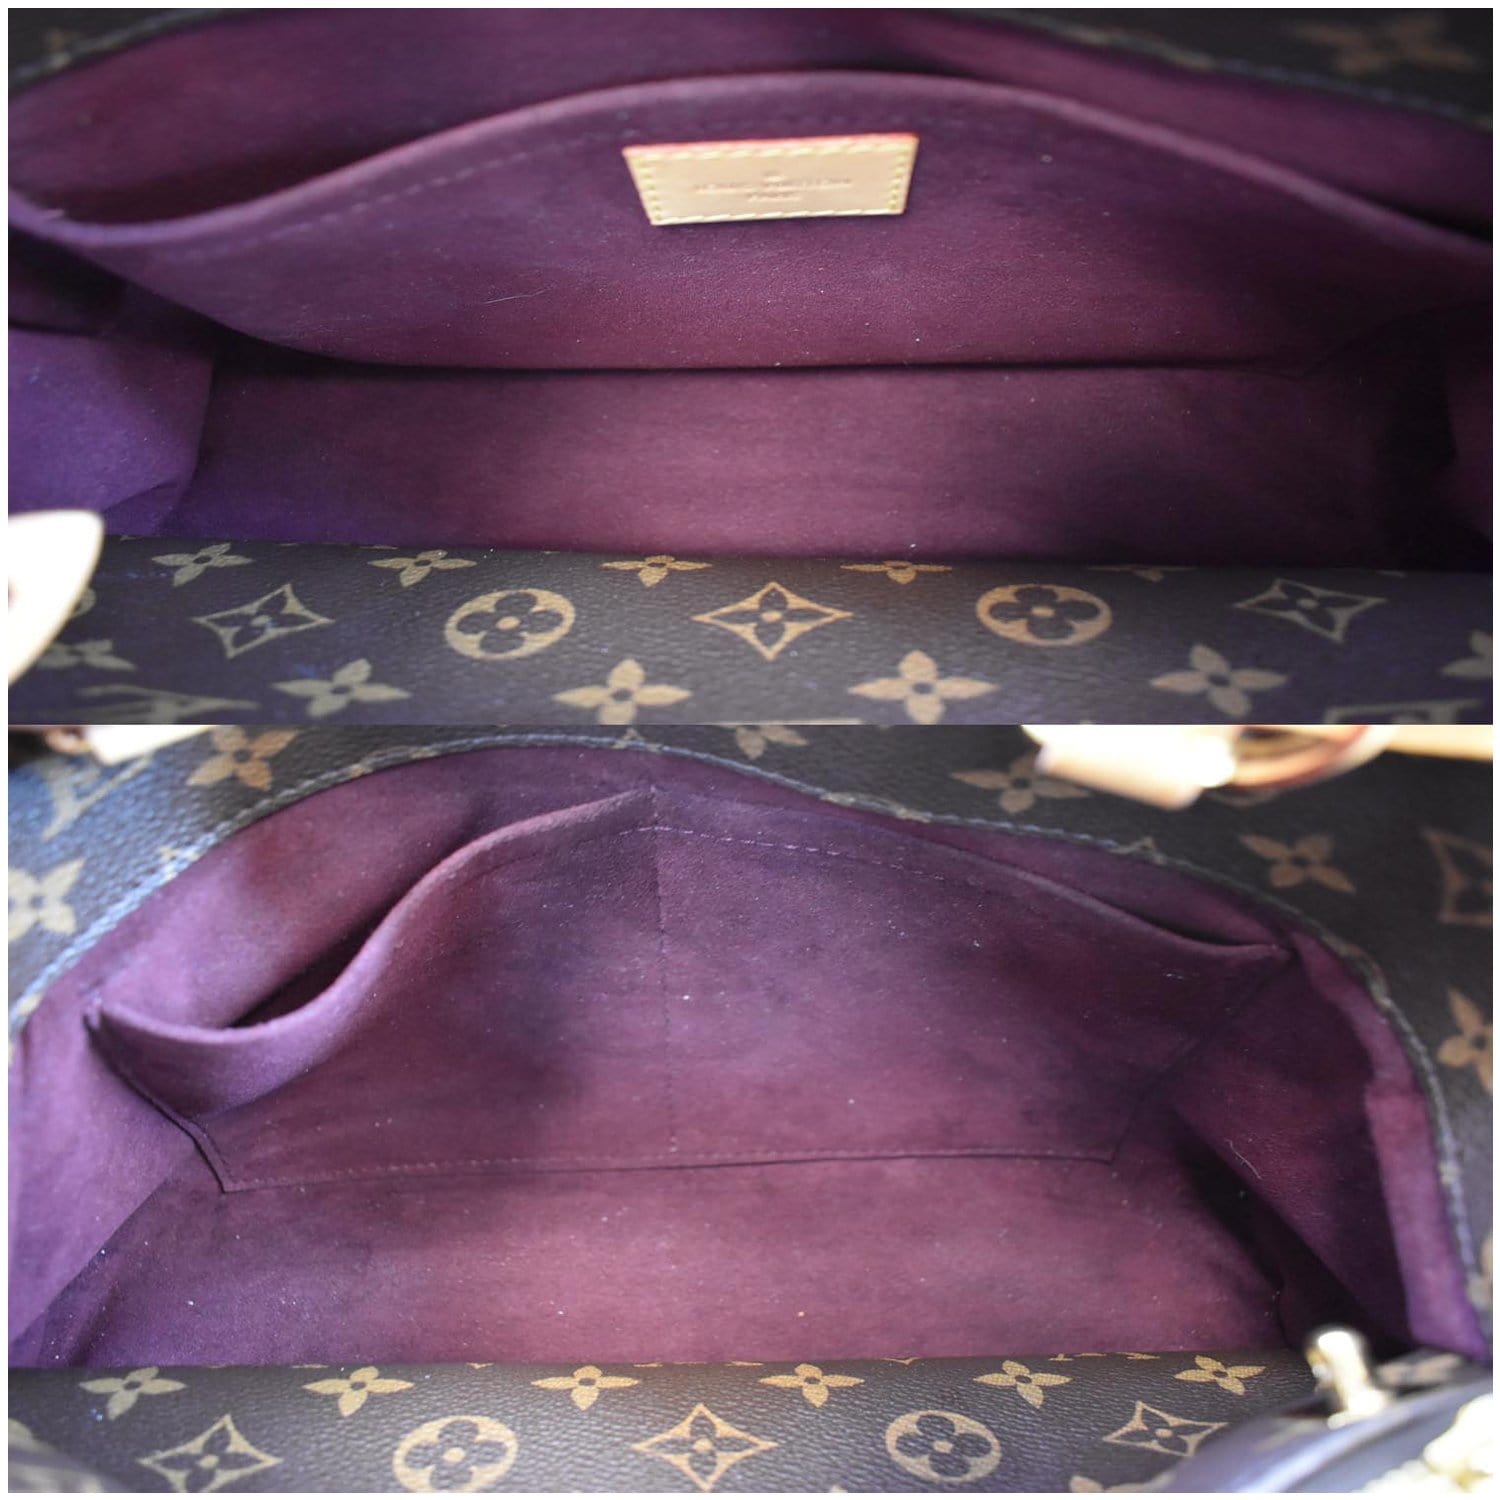 Louis Vuitton Monogram Montaigne MM - Brown Shoulder Bags, Handbags -  LOU755202